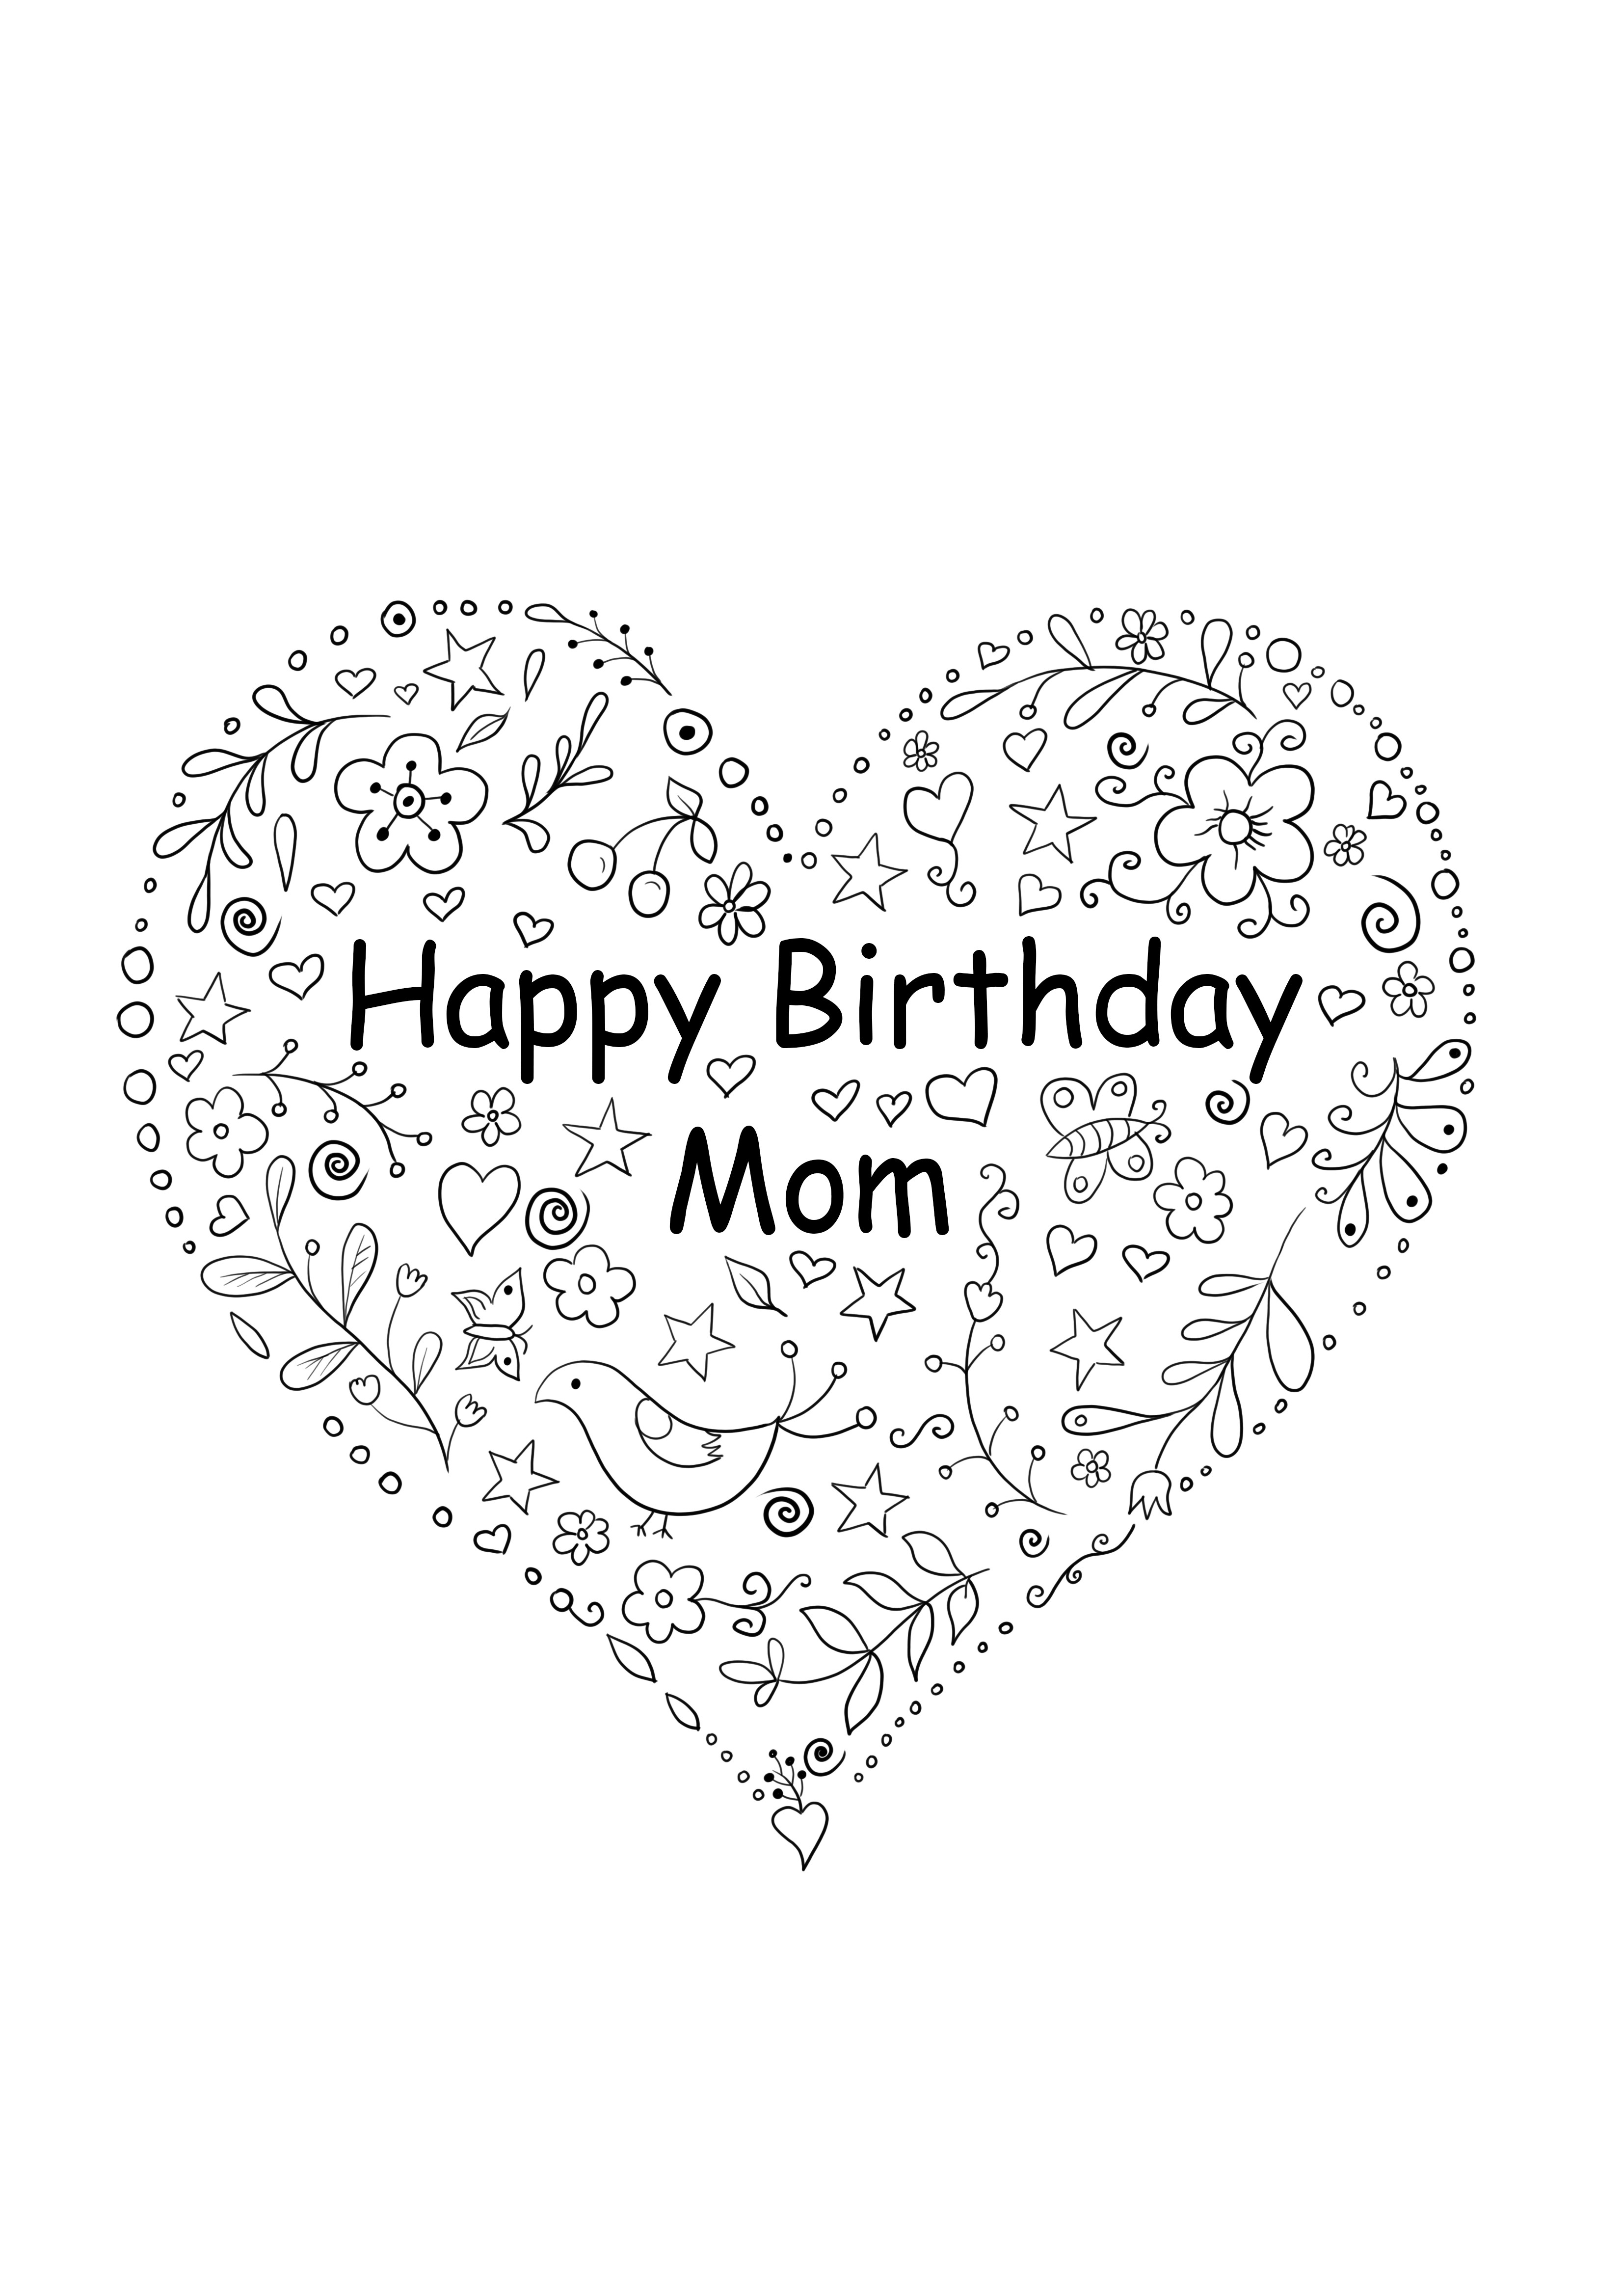 Biglietto a forma di cuore per il compleanno della mamma da stampare gratuitamente